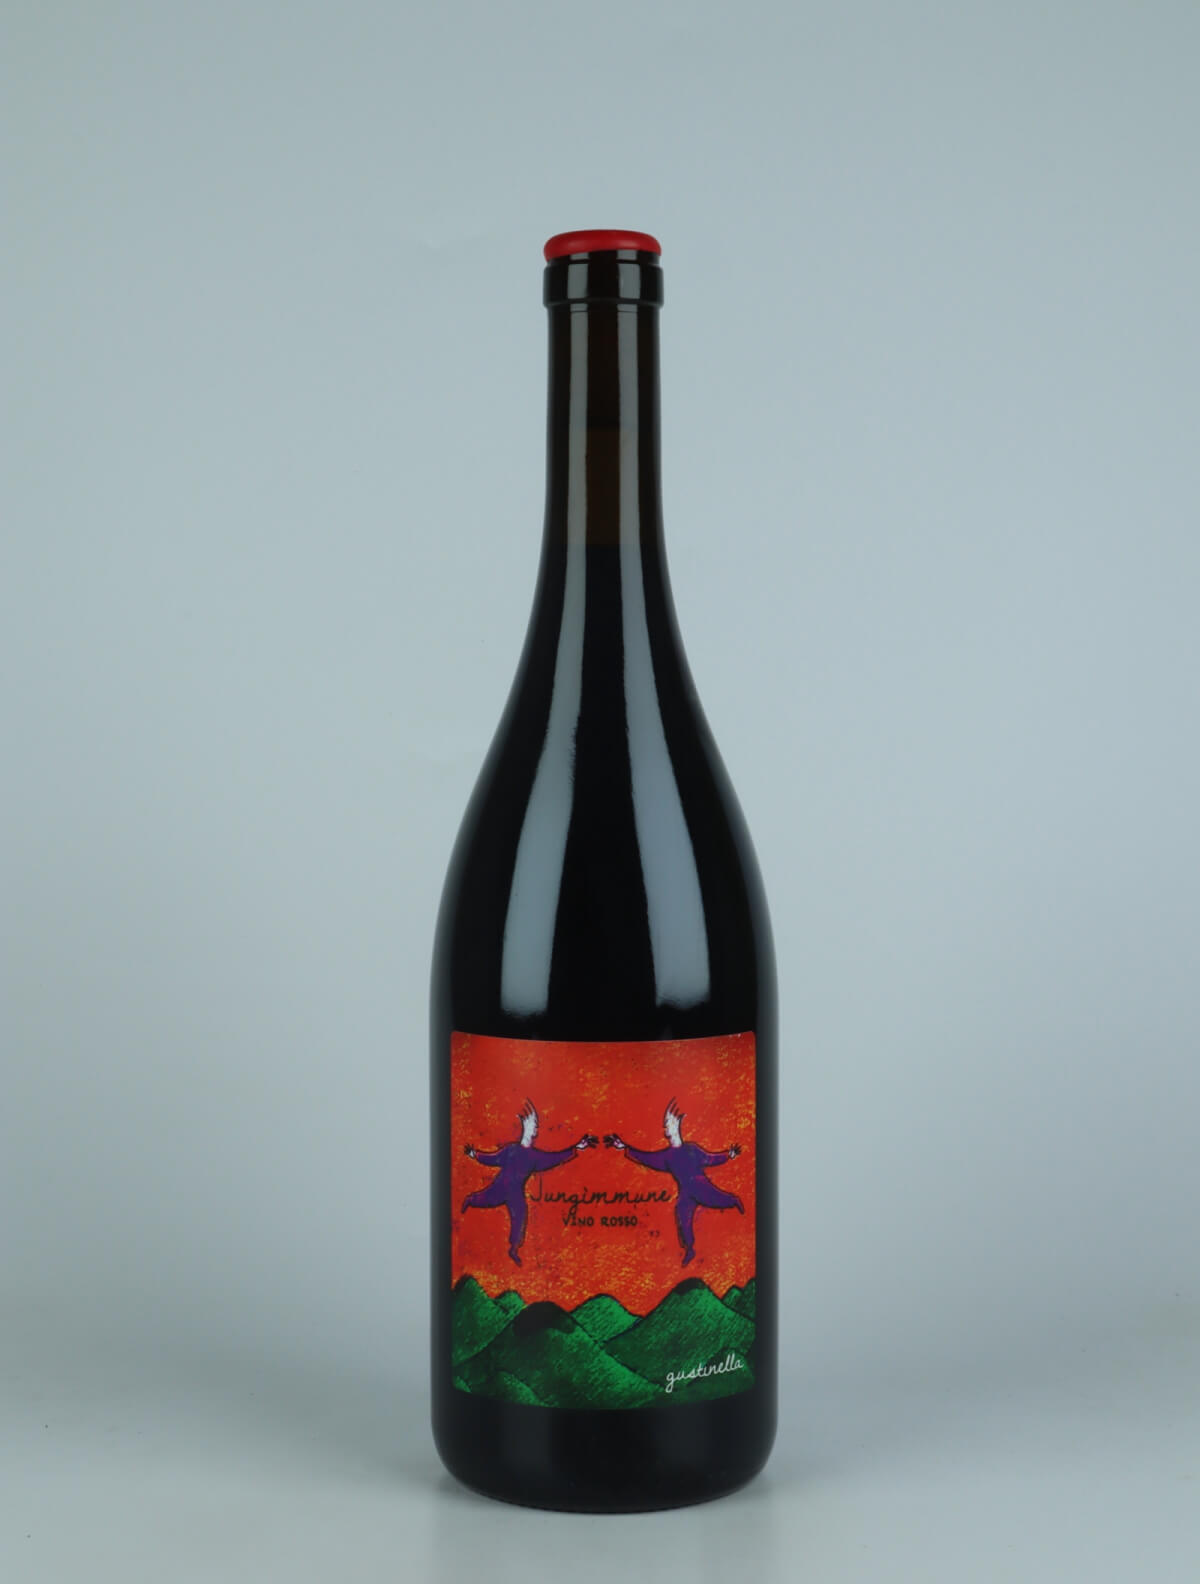 En flaske 2022 Jungimmune Rosso Rødvin fra Gustinella, Sicilien i Italien